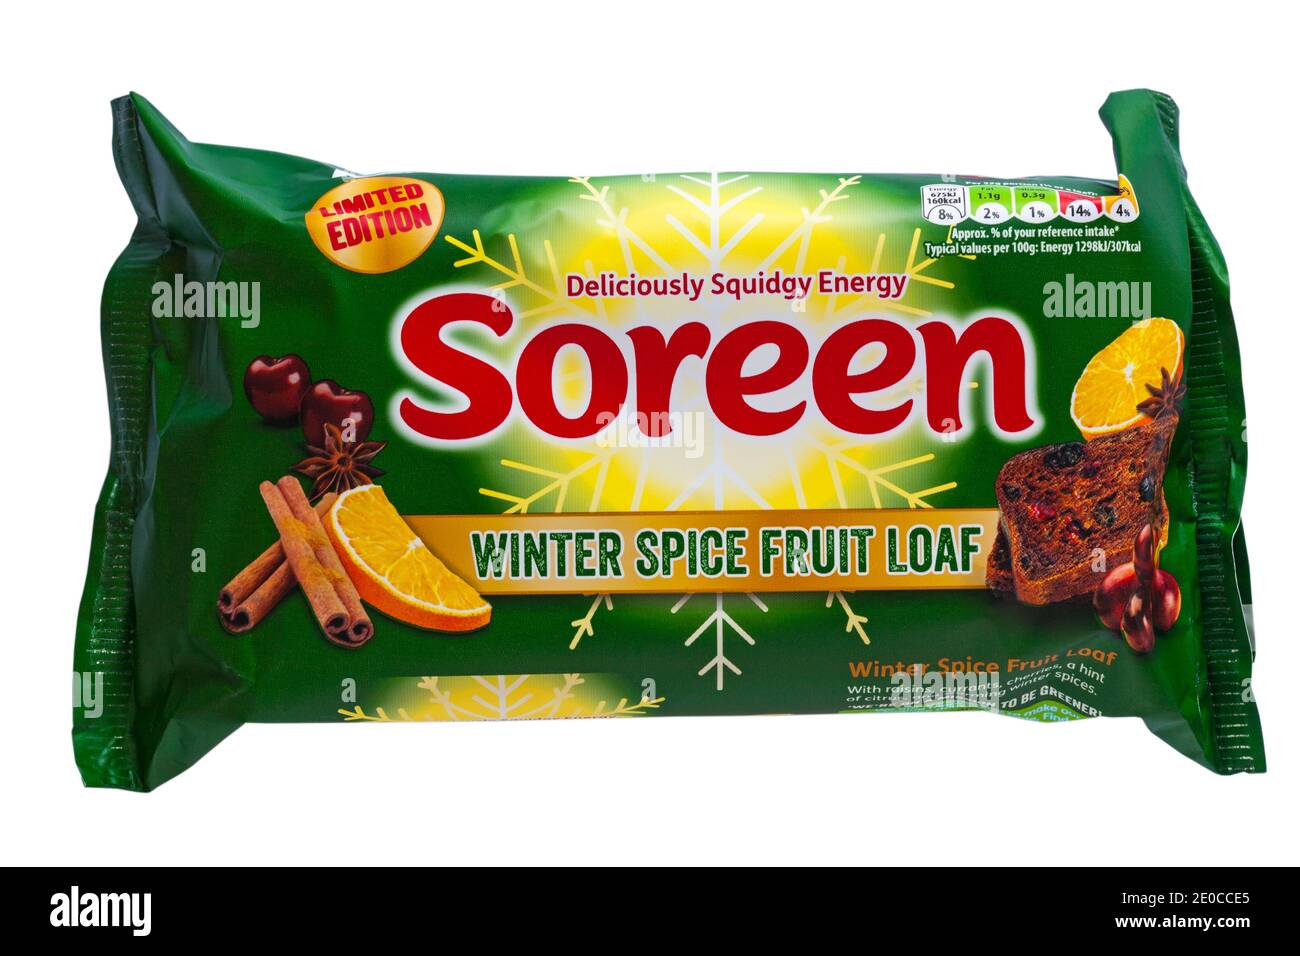 Soreen Winter Spice Fruit Loaf edizione limitata deliziosamente squidgy energia isolato su sfondo bianco Foto Stock